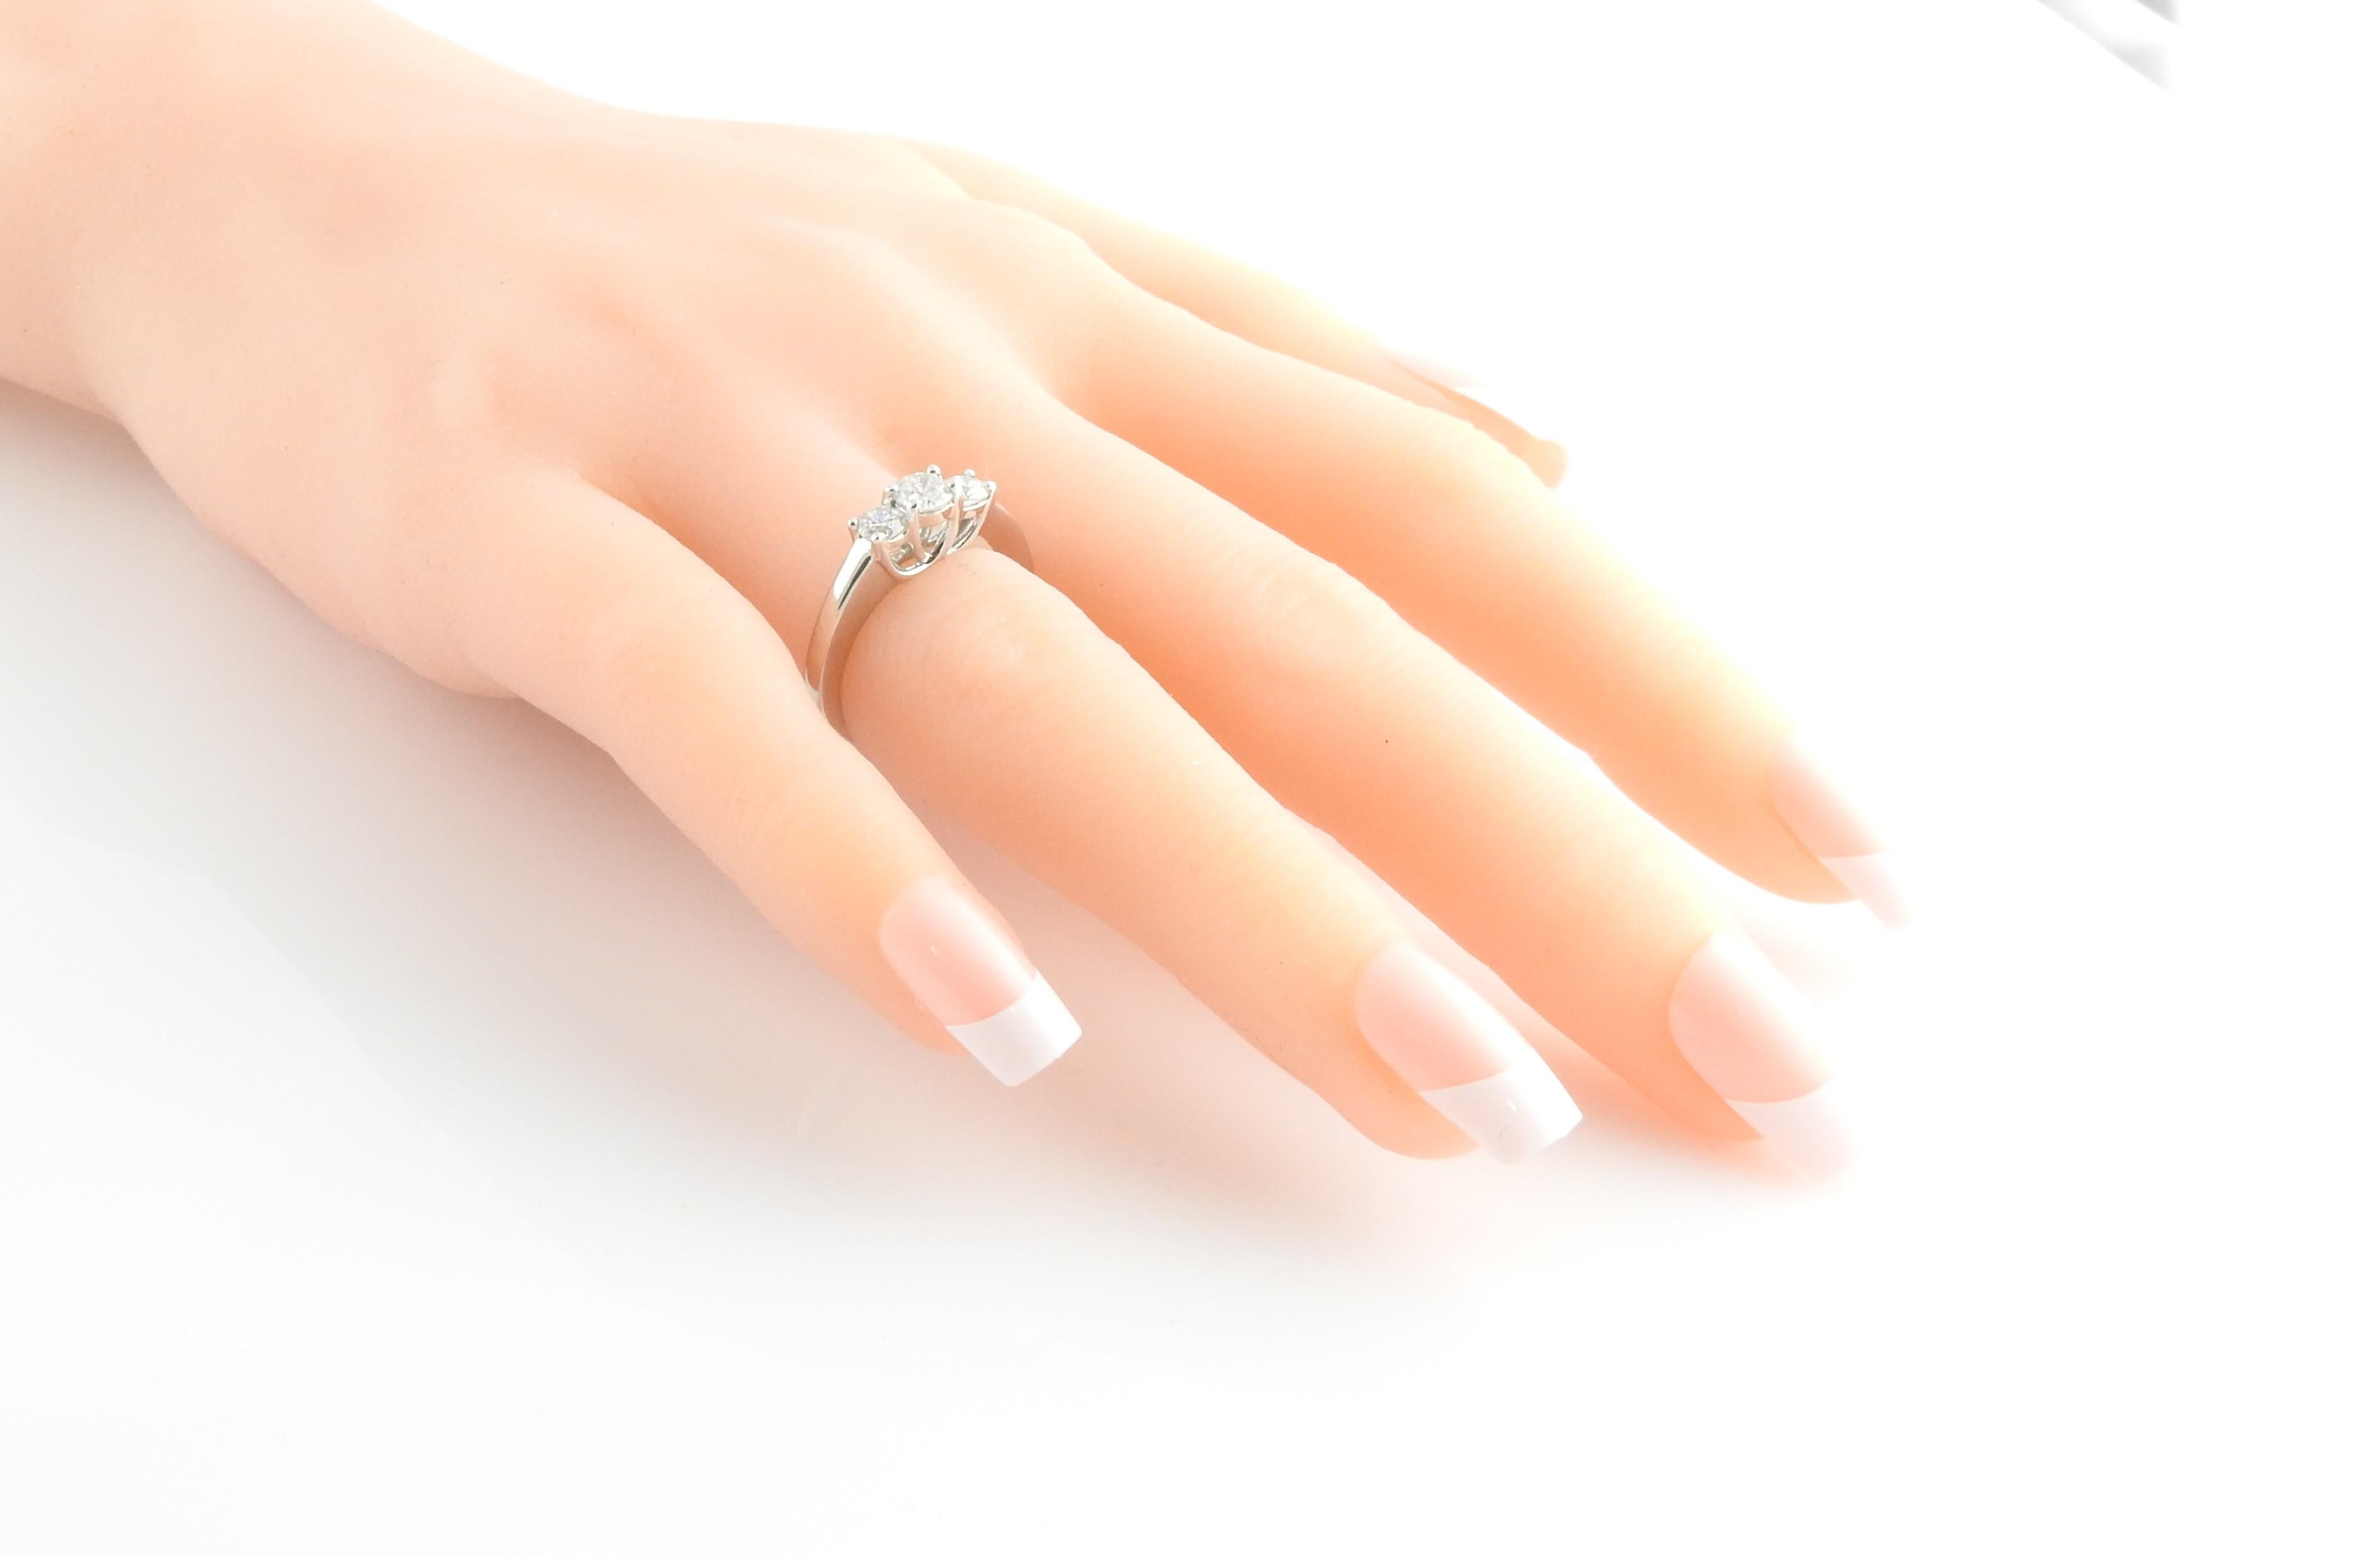 14 Karat White Gold Three-Stone Diamond Ring For Sale 2